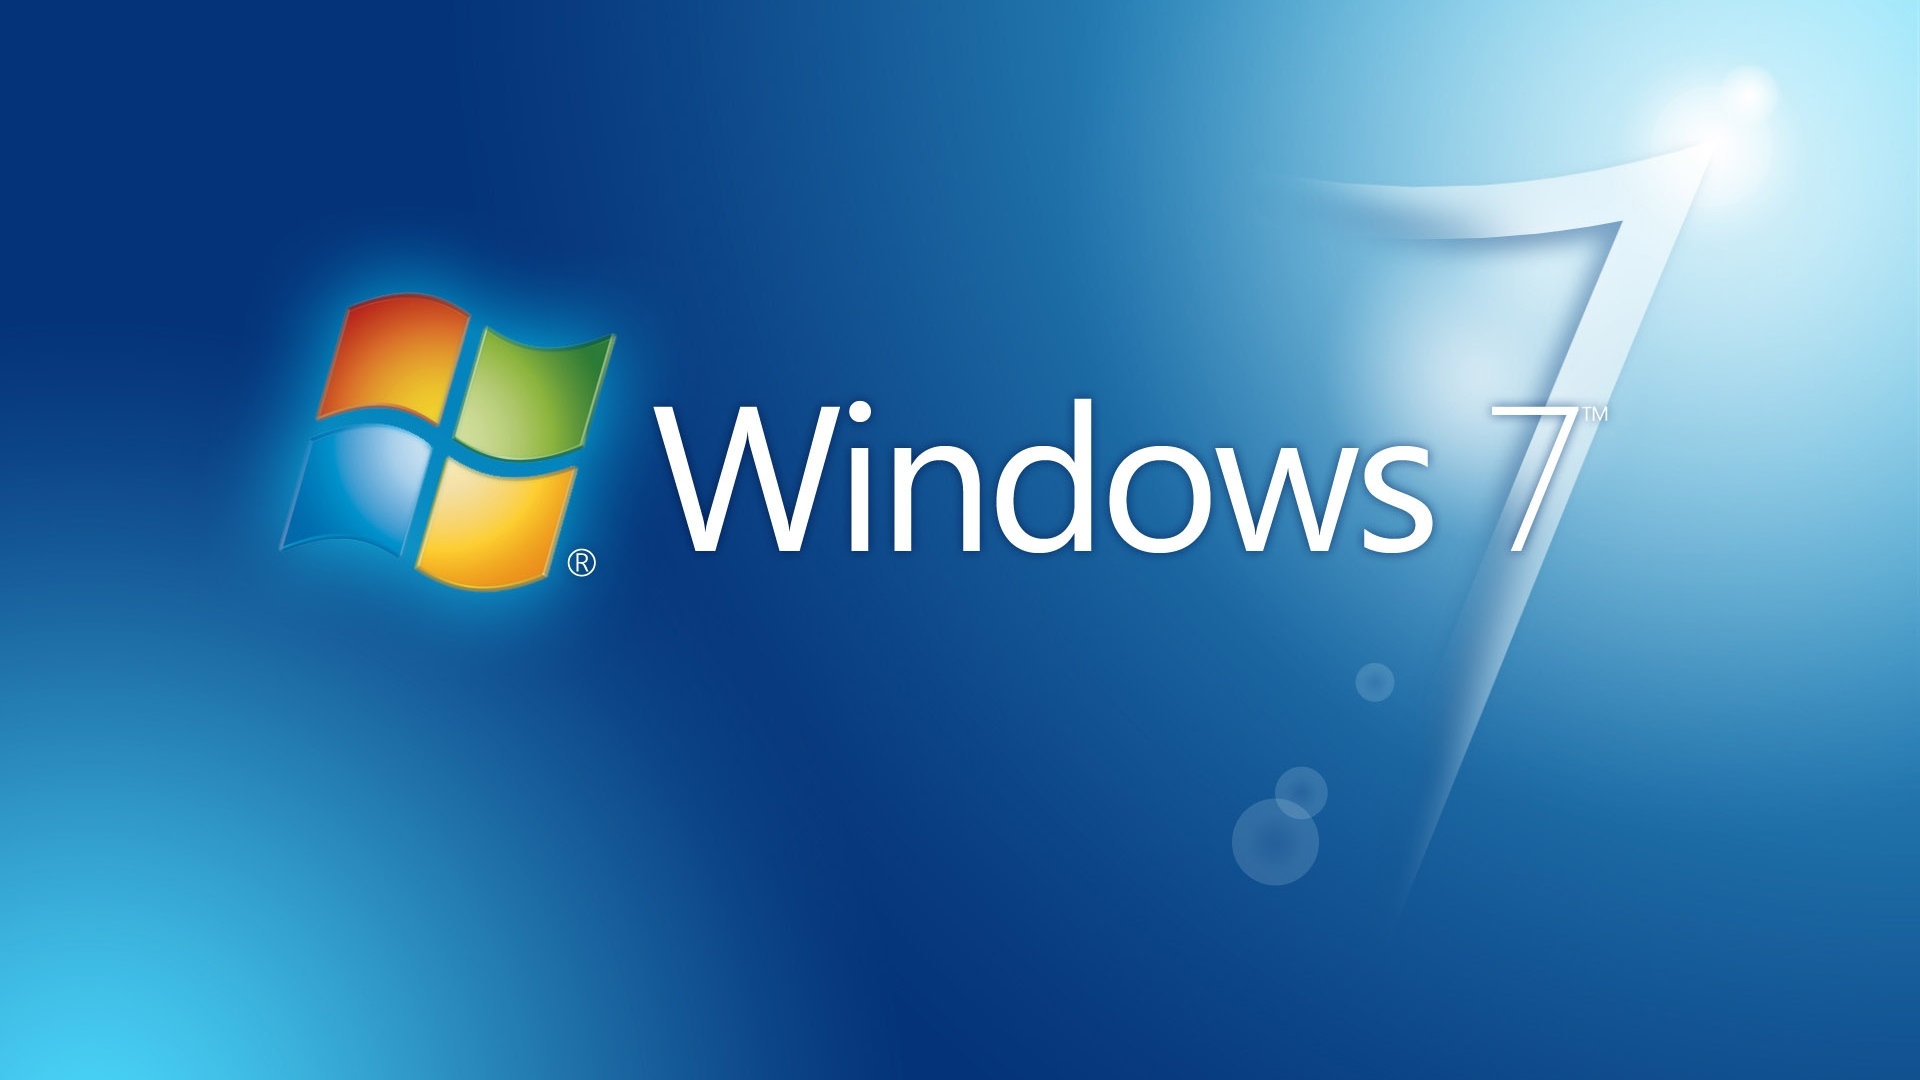 Hình nền máy tính Windows 8 đẹp Full HD  Wallpaper Win 8  Ảnh Nền   EhoTYnLt